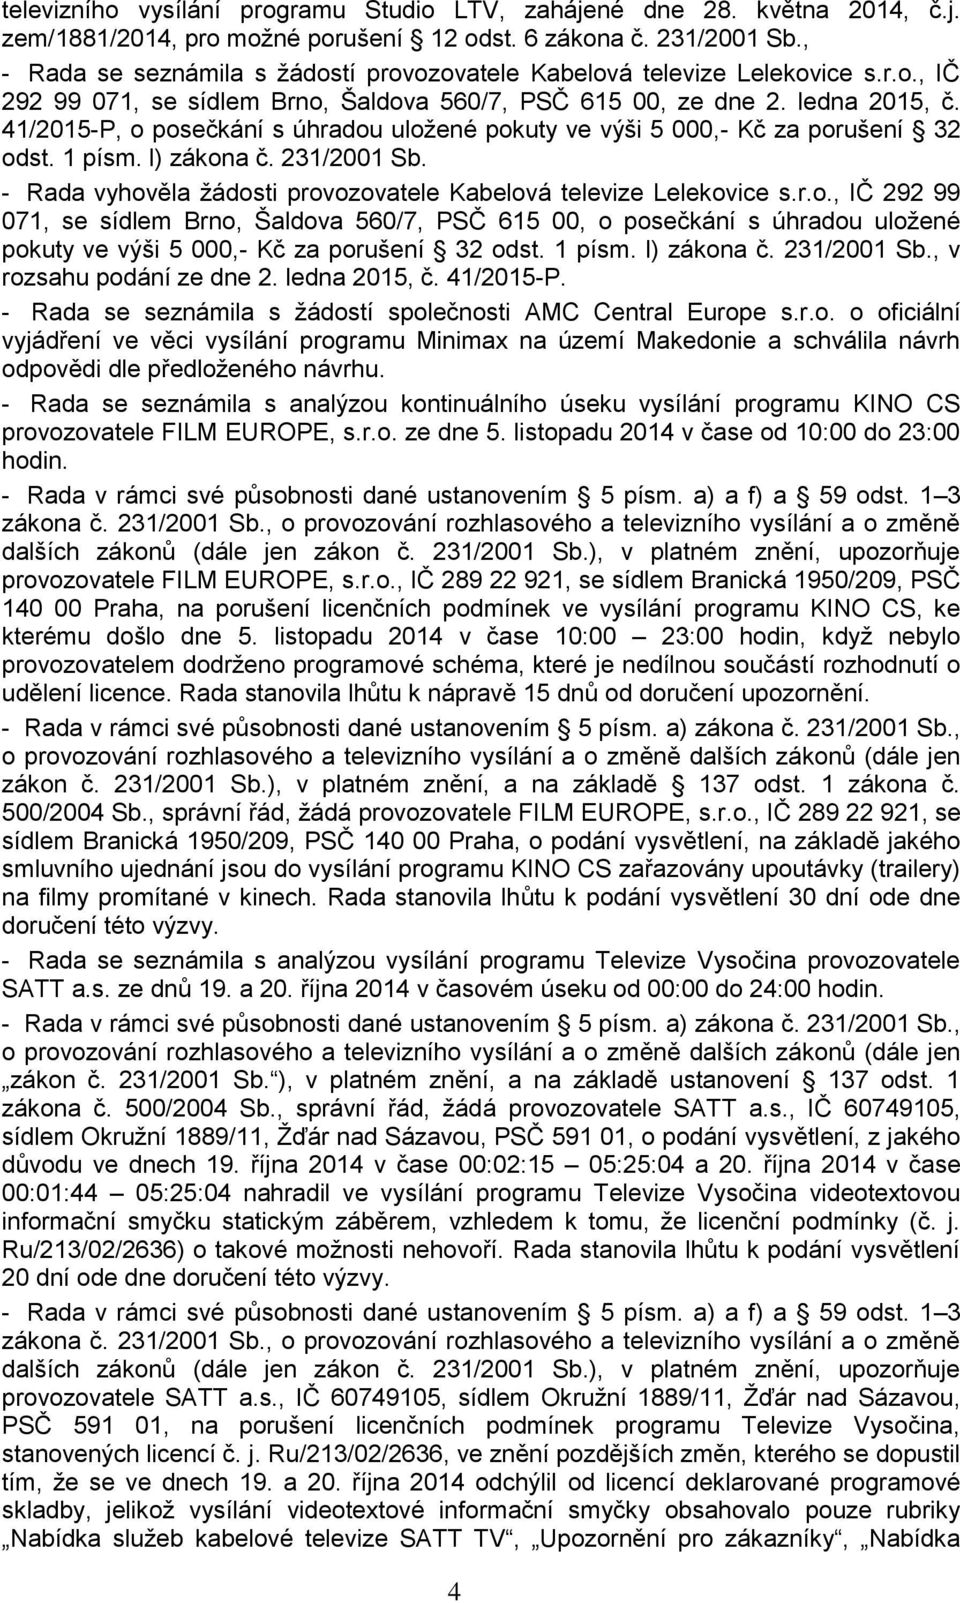 41/2015-P, o posečkání s úhradou uložené pokuty ve výši 5 000,- Kč za porušení 32 odst. 1 písm. l) zákona č. 231/2001 Sb. - Rada vyhověla žádosti provozovatele Kabelová televize Lelekovice s.r.o., IČ 292 99 071, se sídlem Brno, Šaldova 560/7, PSČ 615 00, o posečkání s úhradou uložené pokuty ve výši 5 000,- Kč za porušení 32 odst.